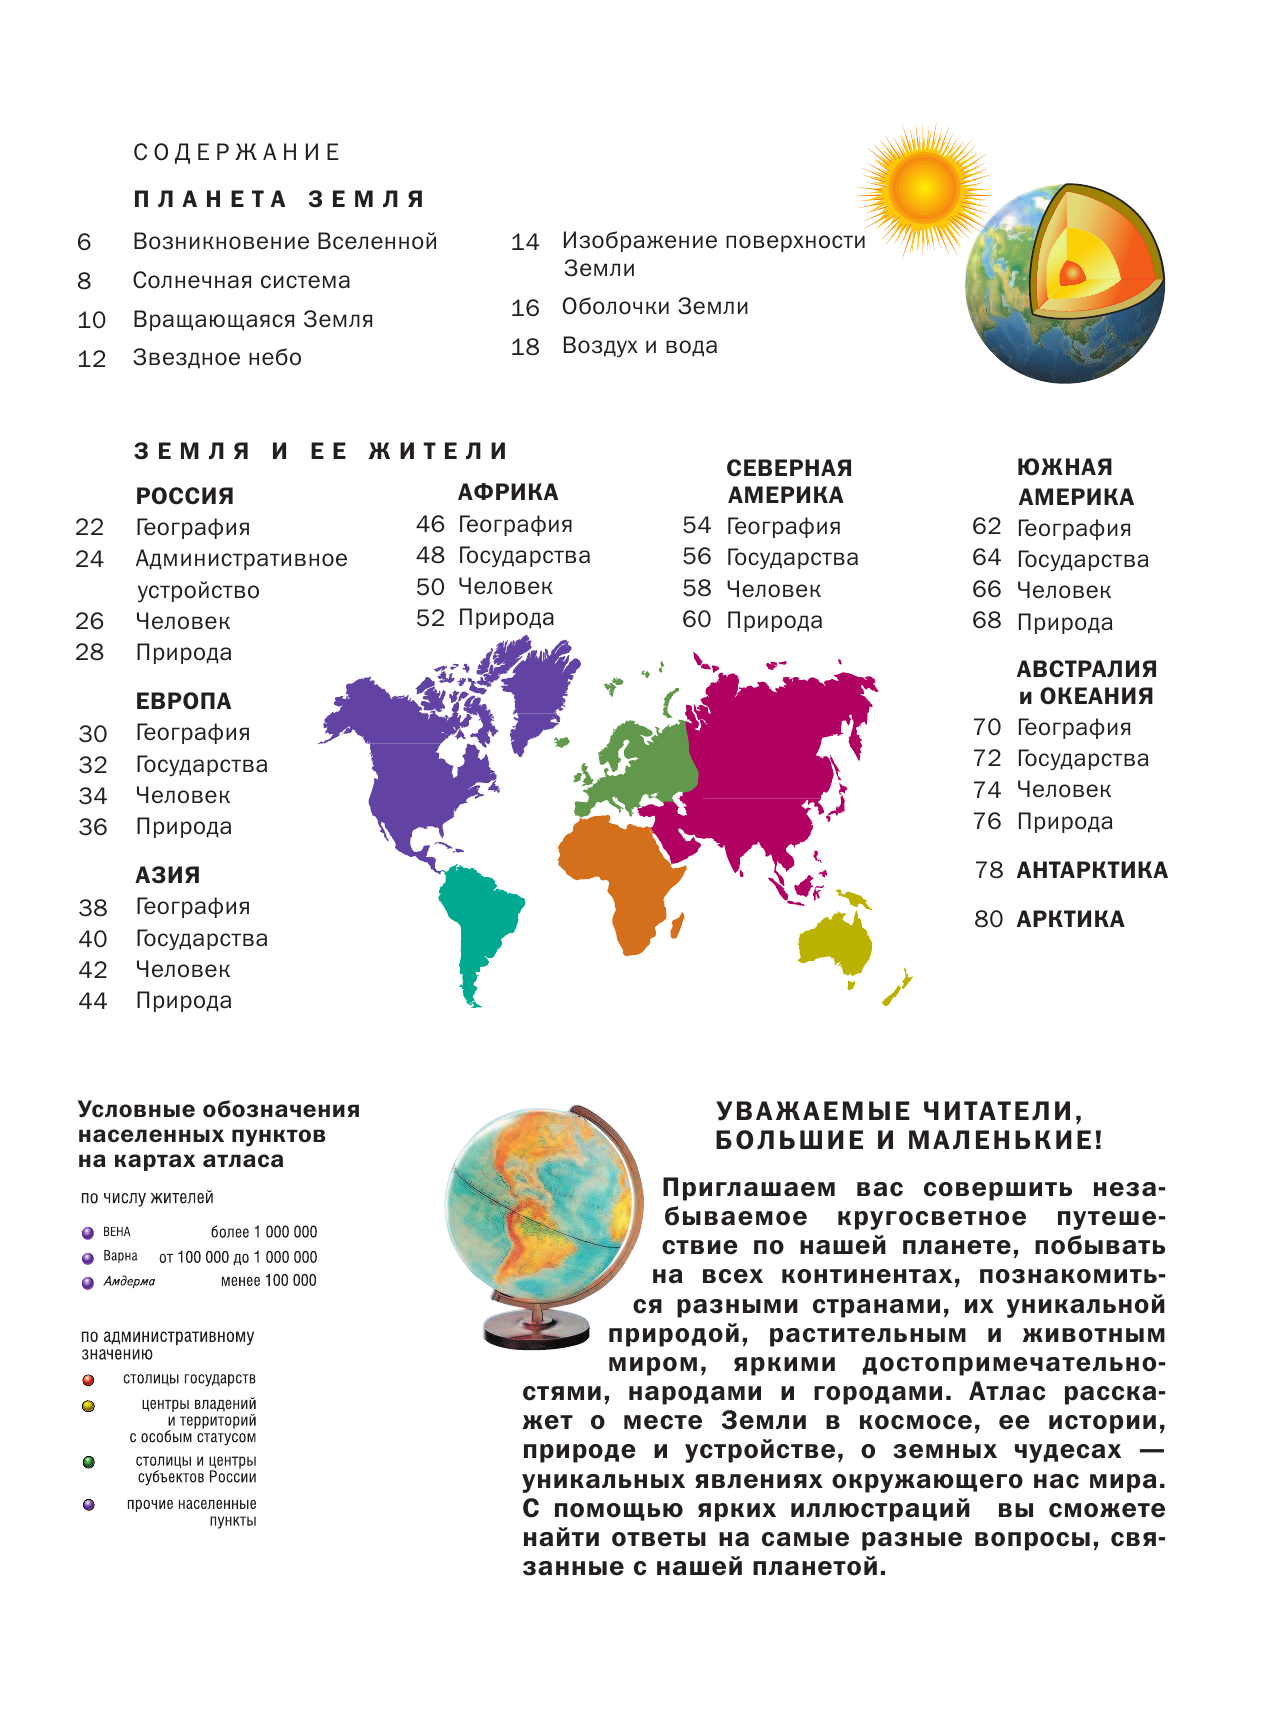  Мир и человек. Полный иллюстрированный географический атлас - страница 4